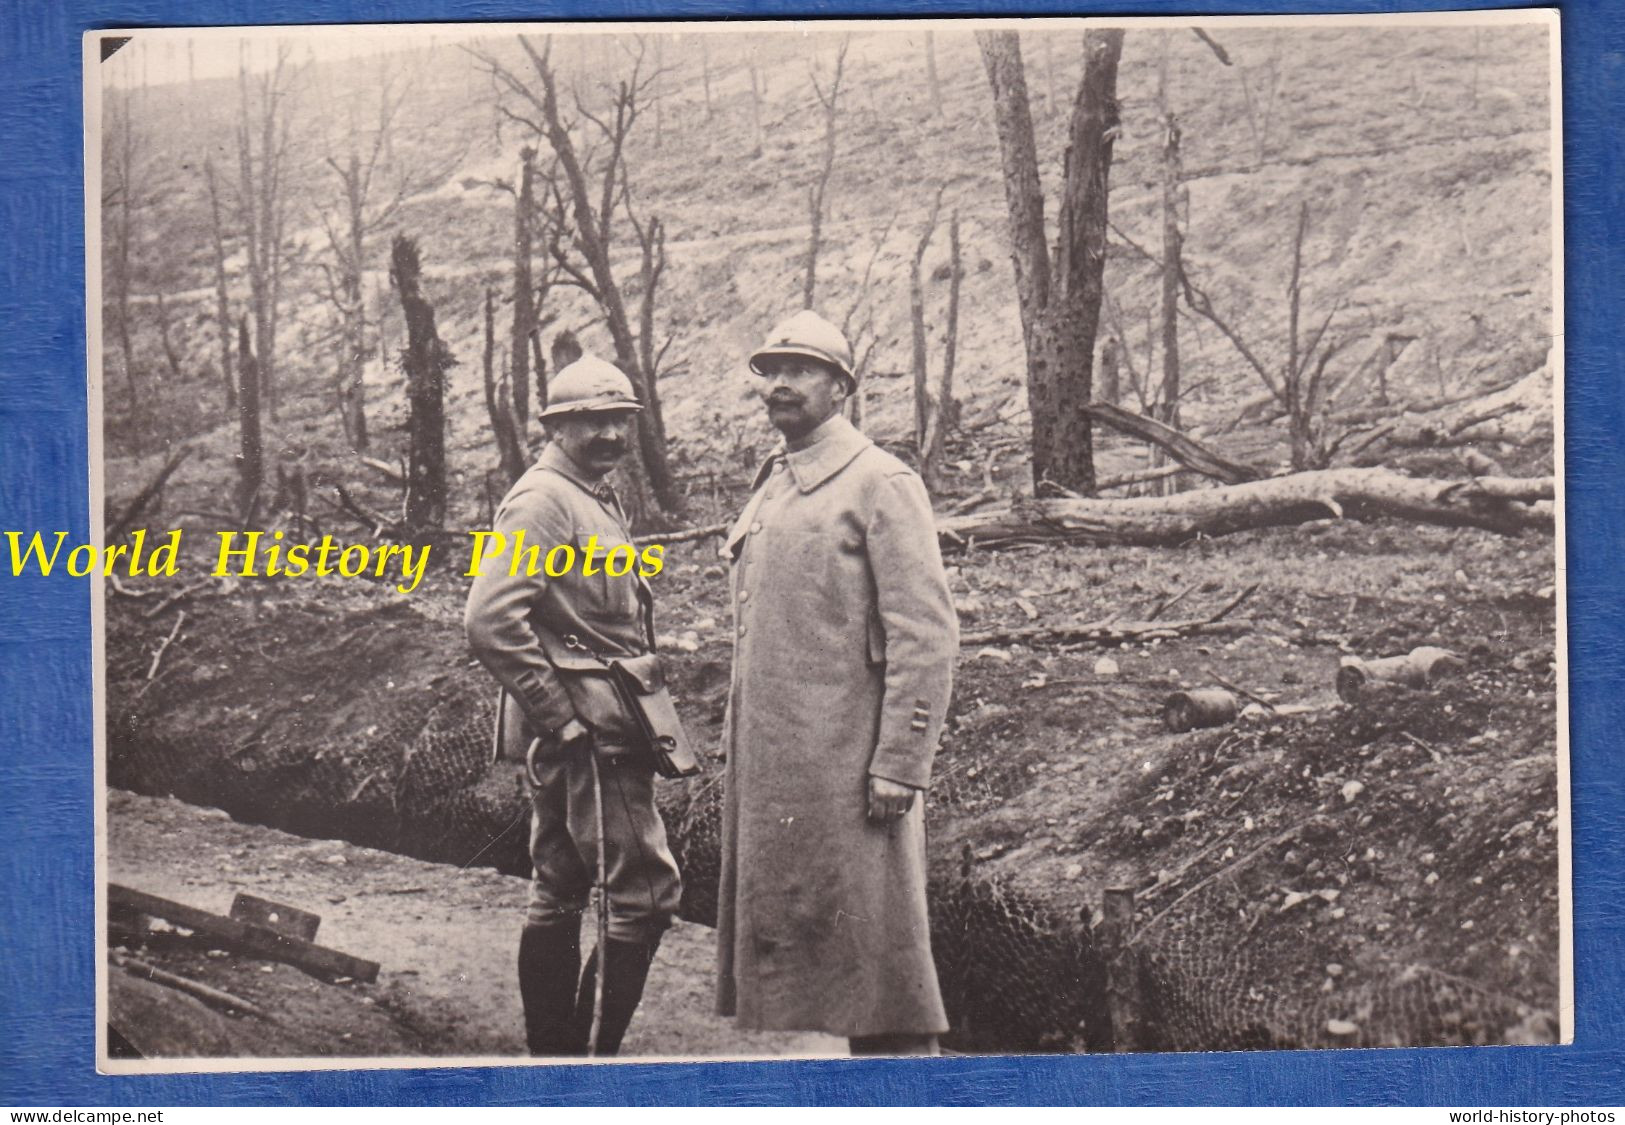 Retirage Ancien D'une Photo De 1916 - TAVANNES P. VERDUN Lieutenant Colonel BOULLE 222e Régiment D' Infanterie WW1 Poilu - Guerre, Militaire